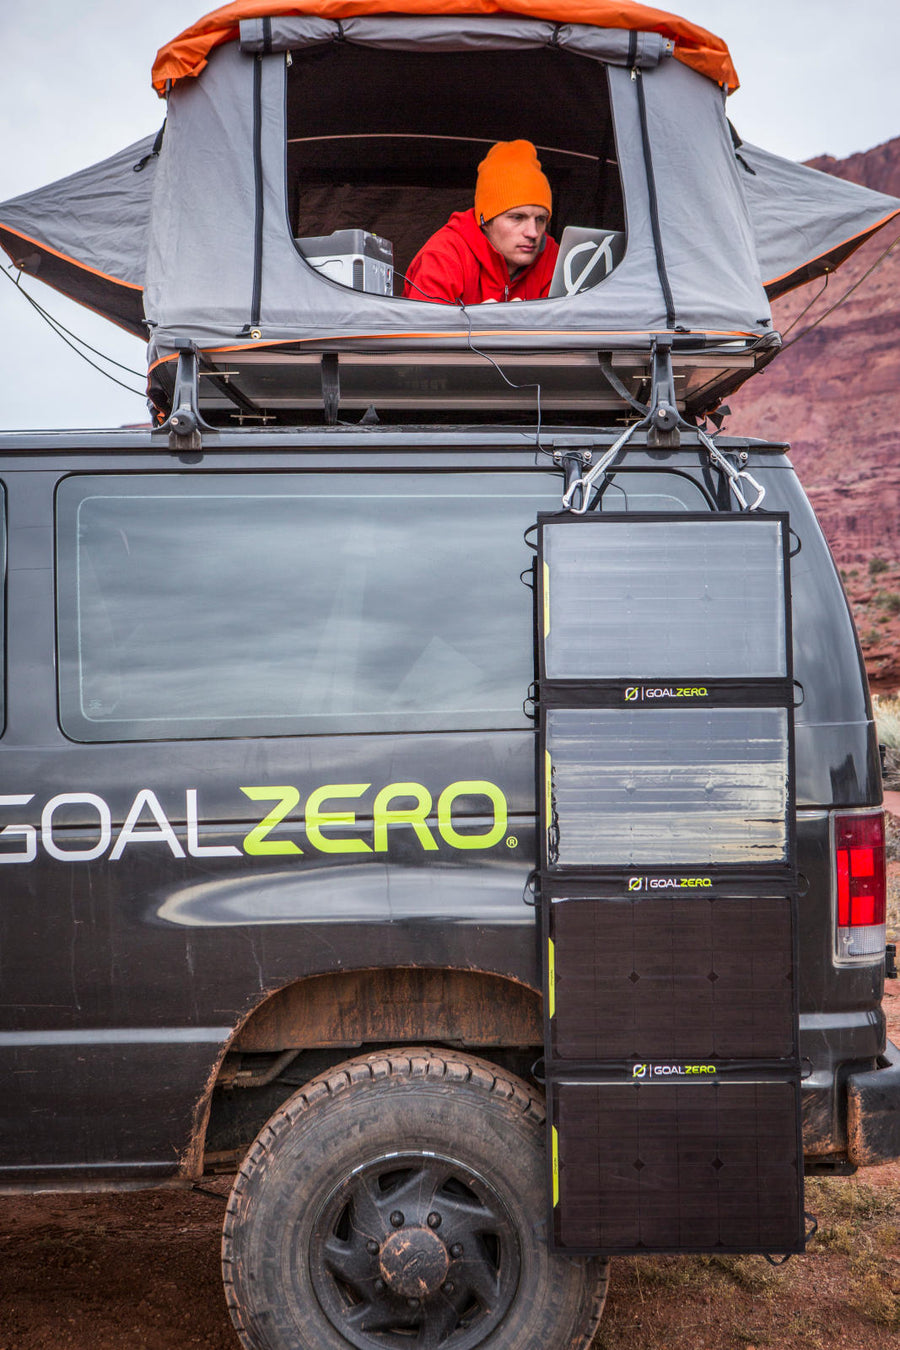 Goal Zero Nomad 100 Solar Panel 太陽能板